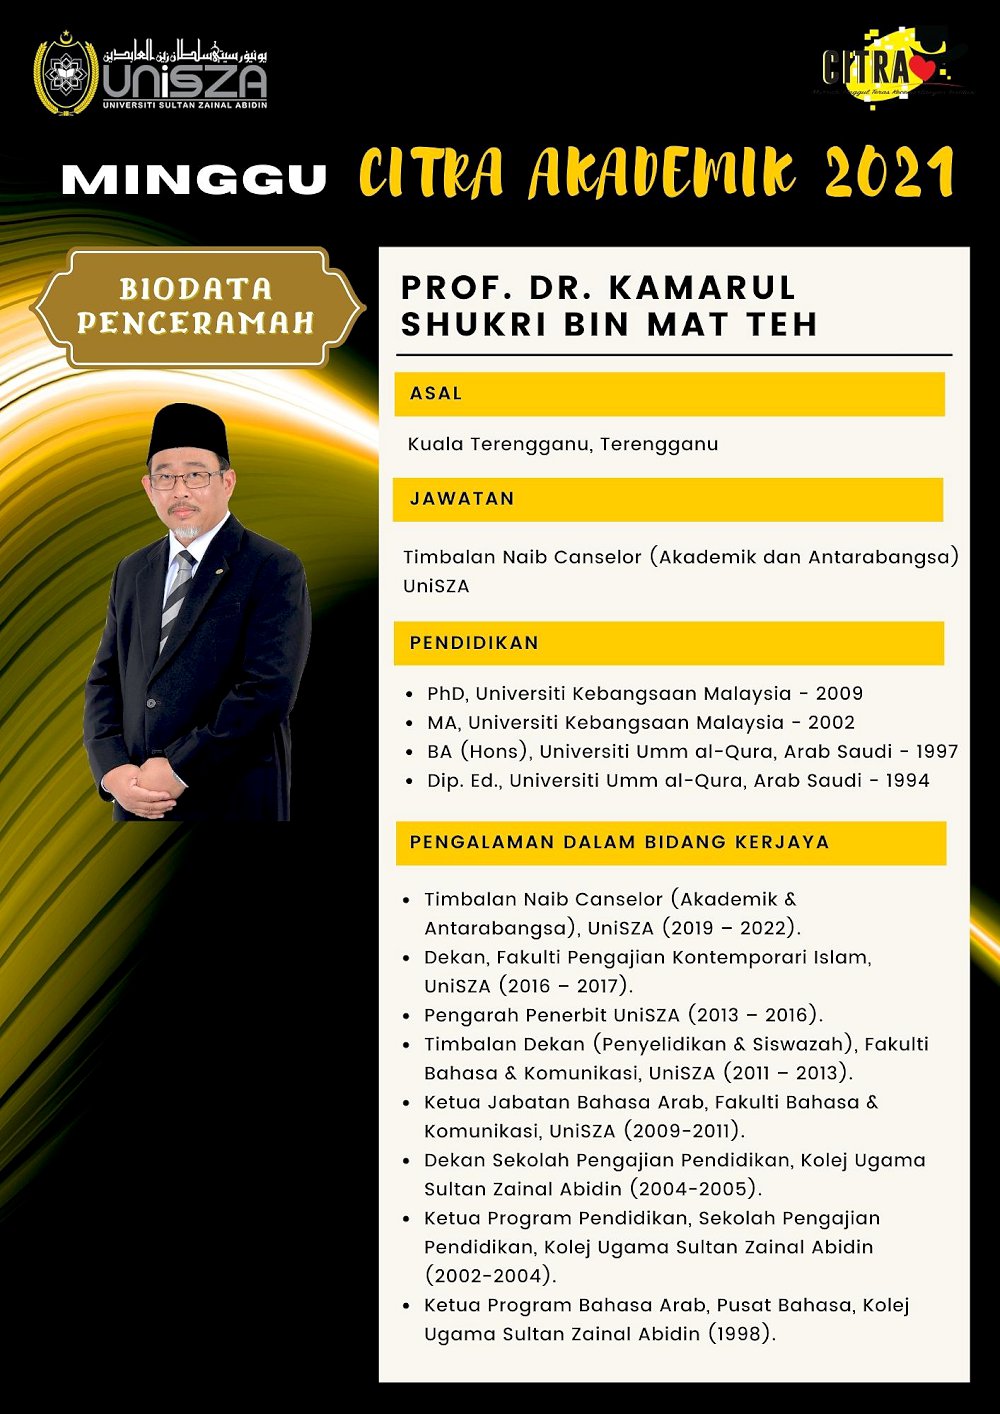 PROF DR KAMARUL SHUKRI 1000x1414